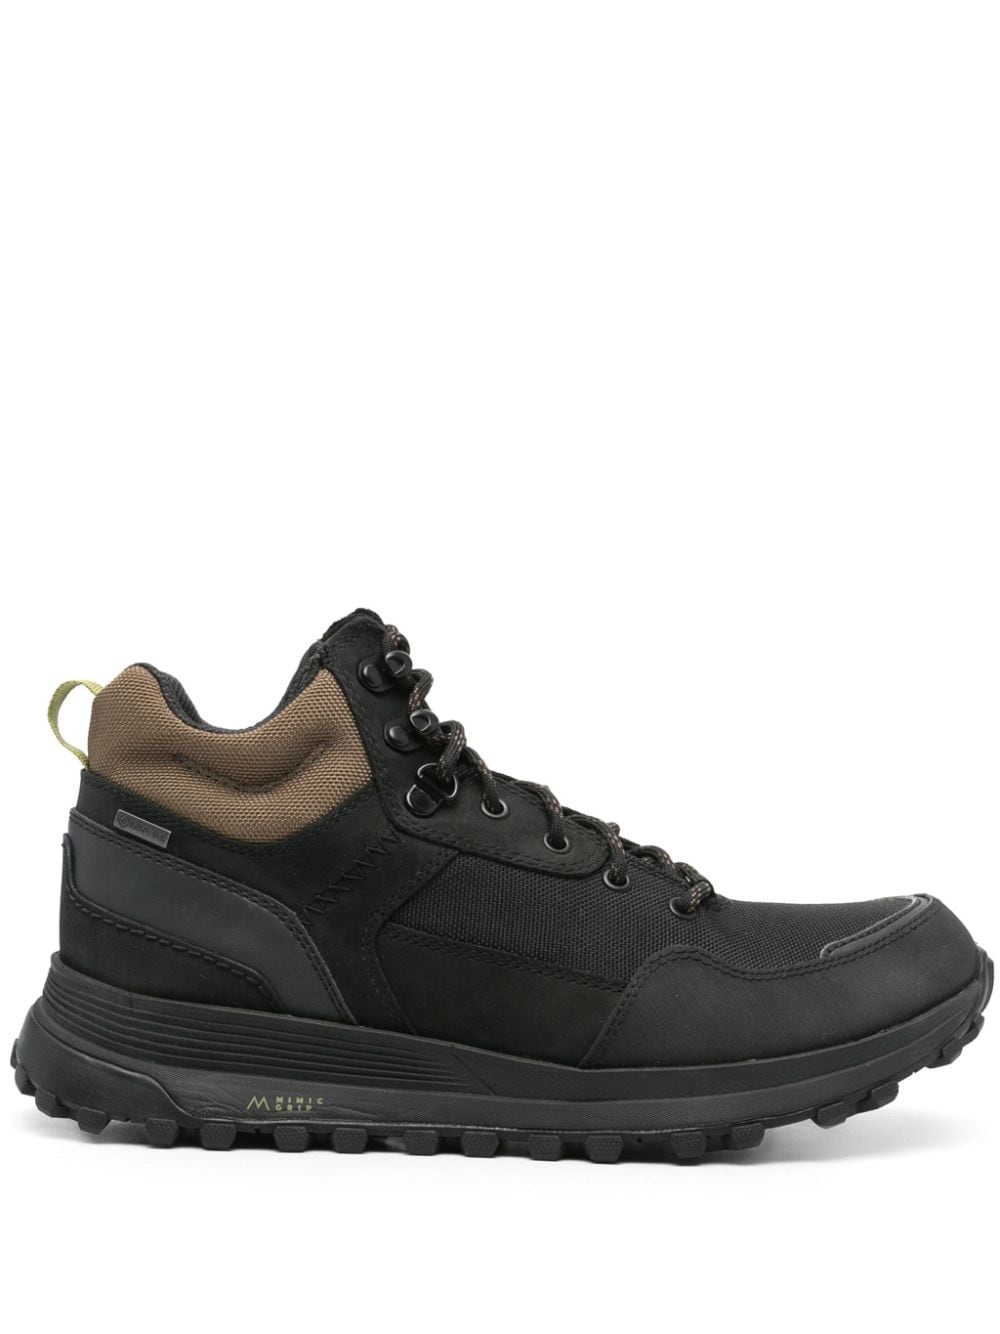 Clarks ATL Trek Hi GTX leather boots Black